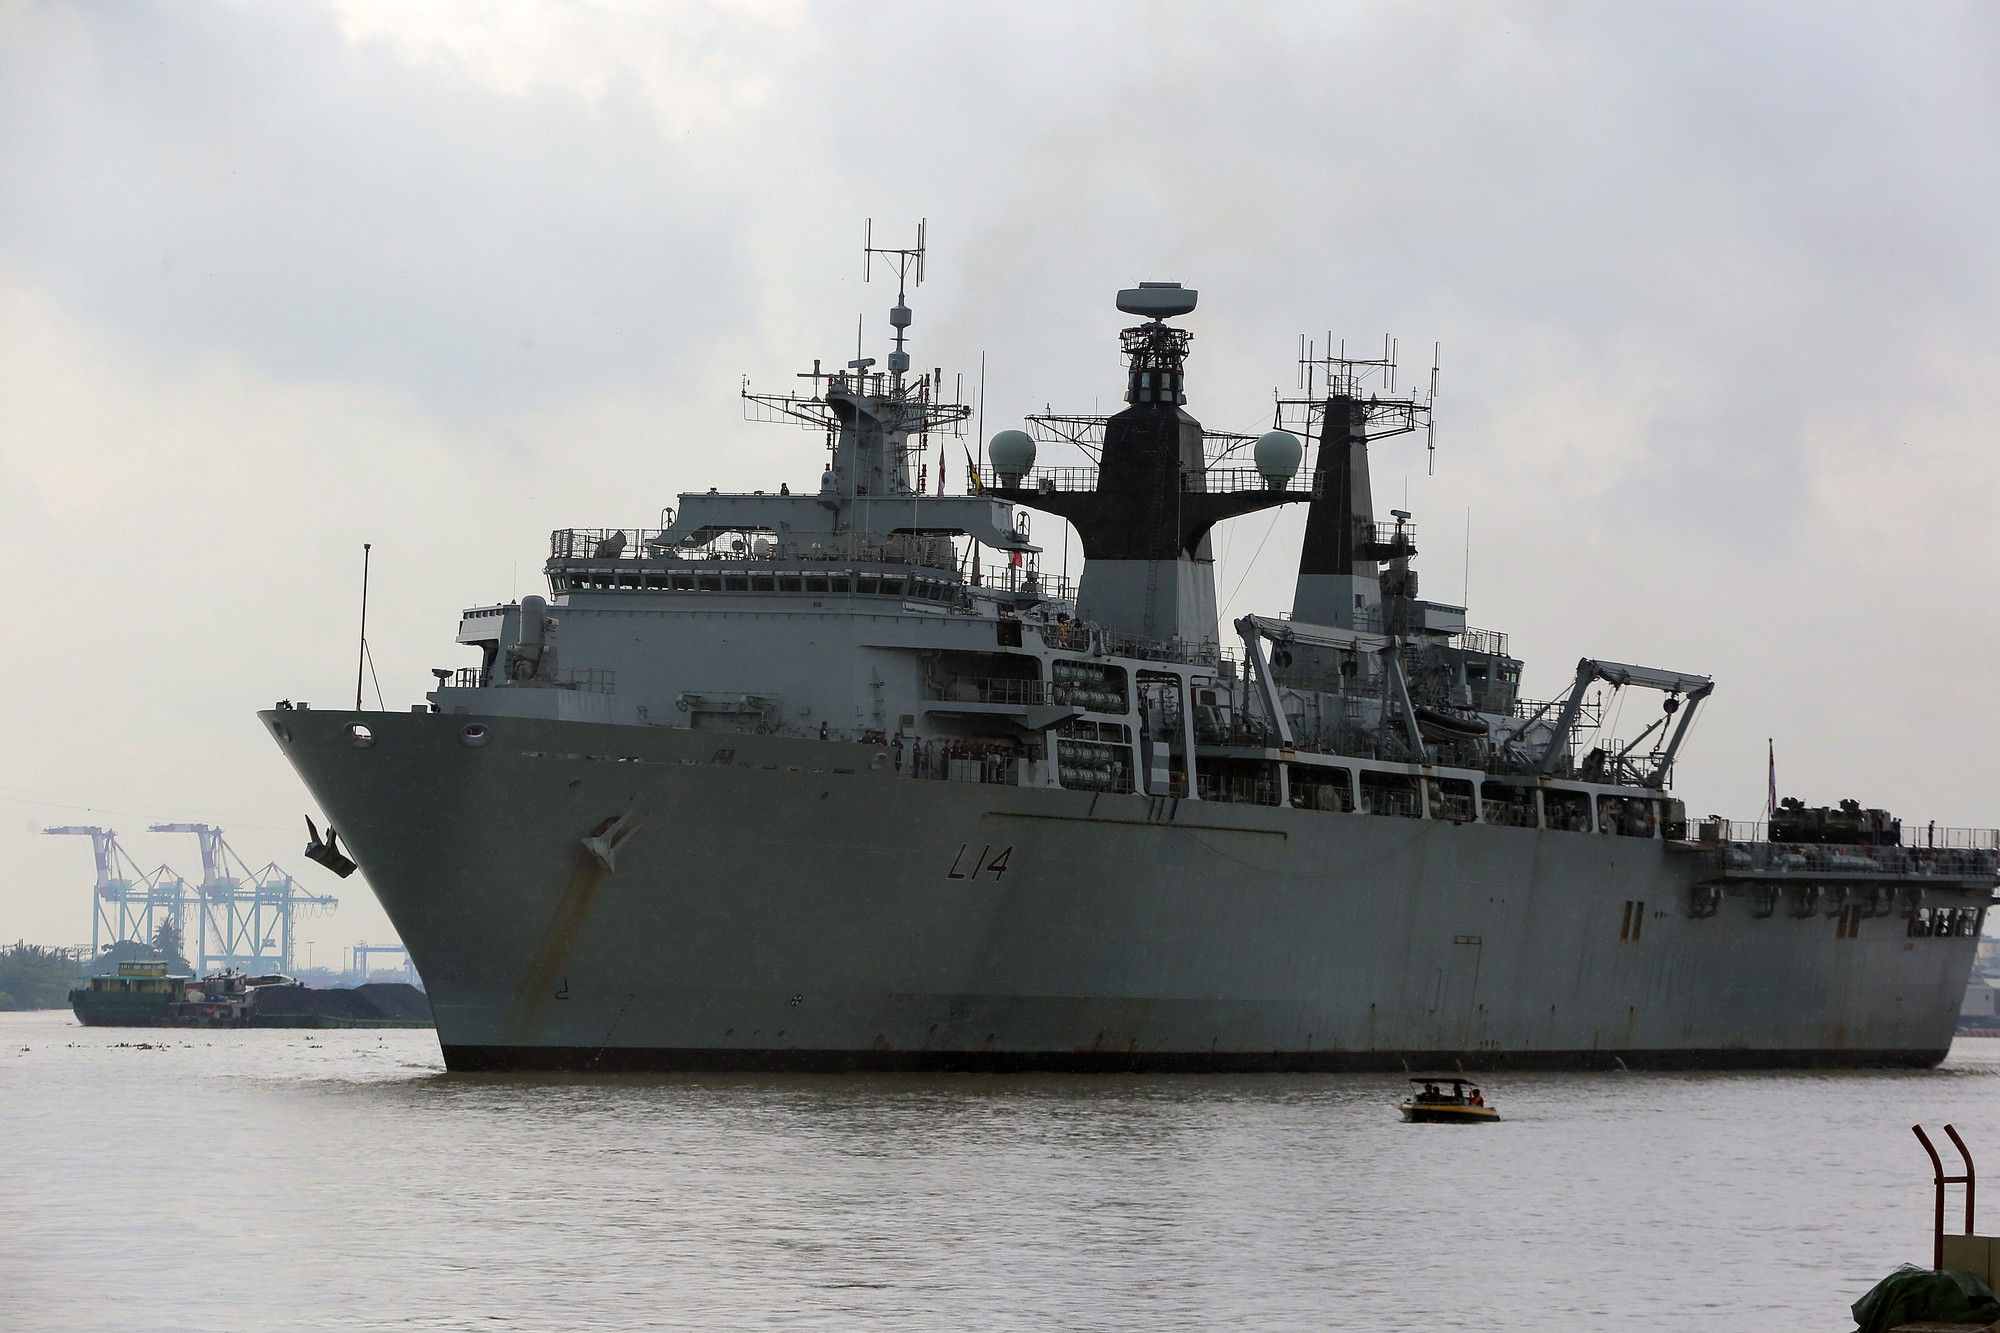 Ngắm tàu đổ bộ HMS Albion của Hải quân Anh đang thăm TP HCM - Ảnh 2.